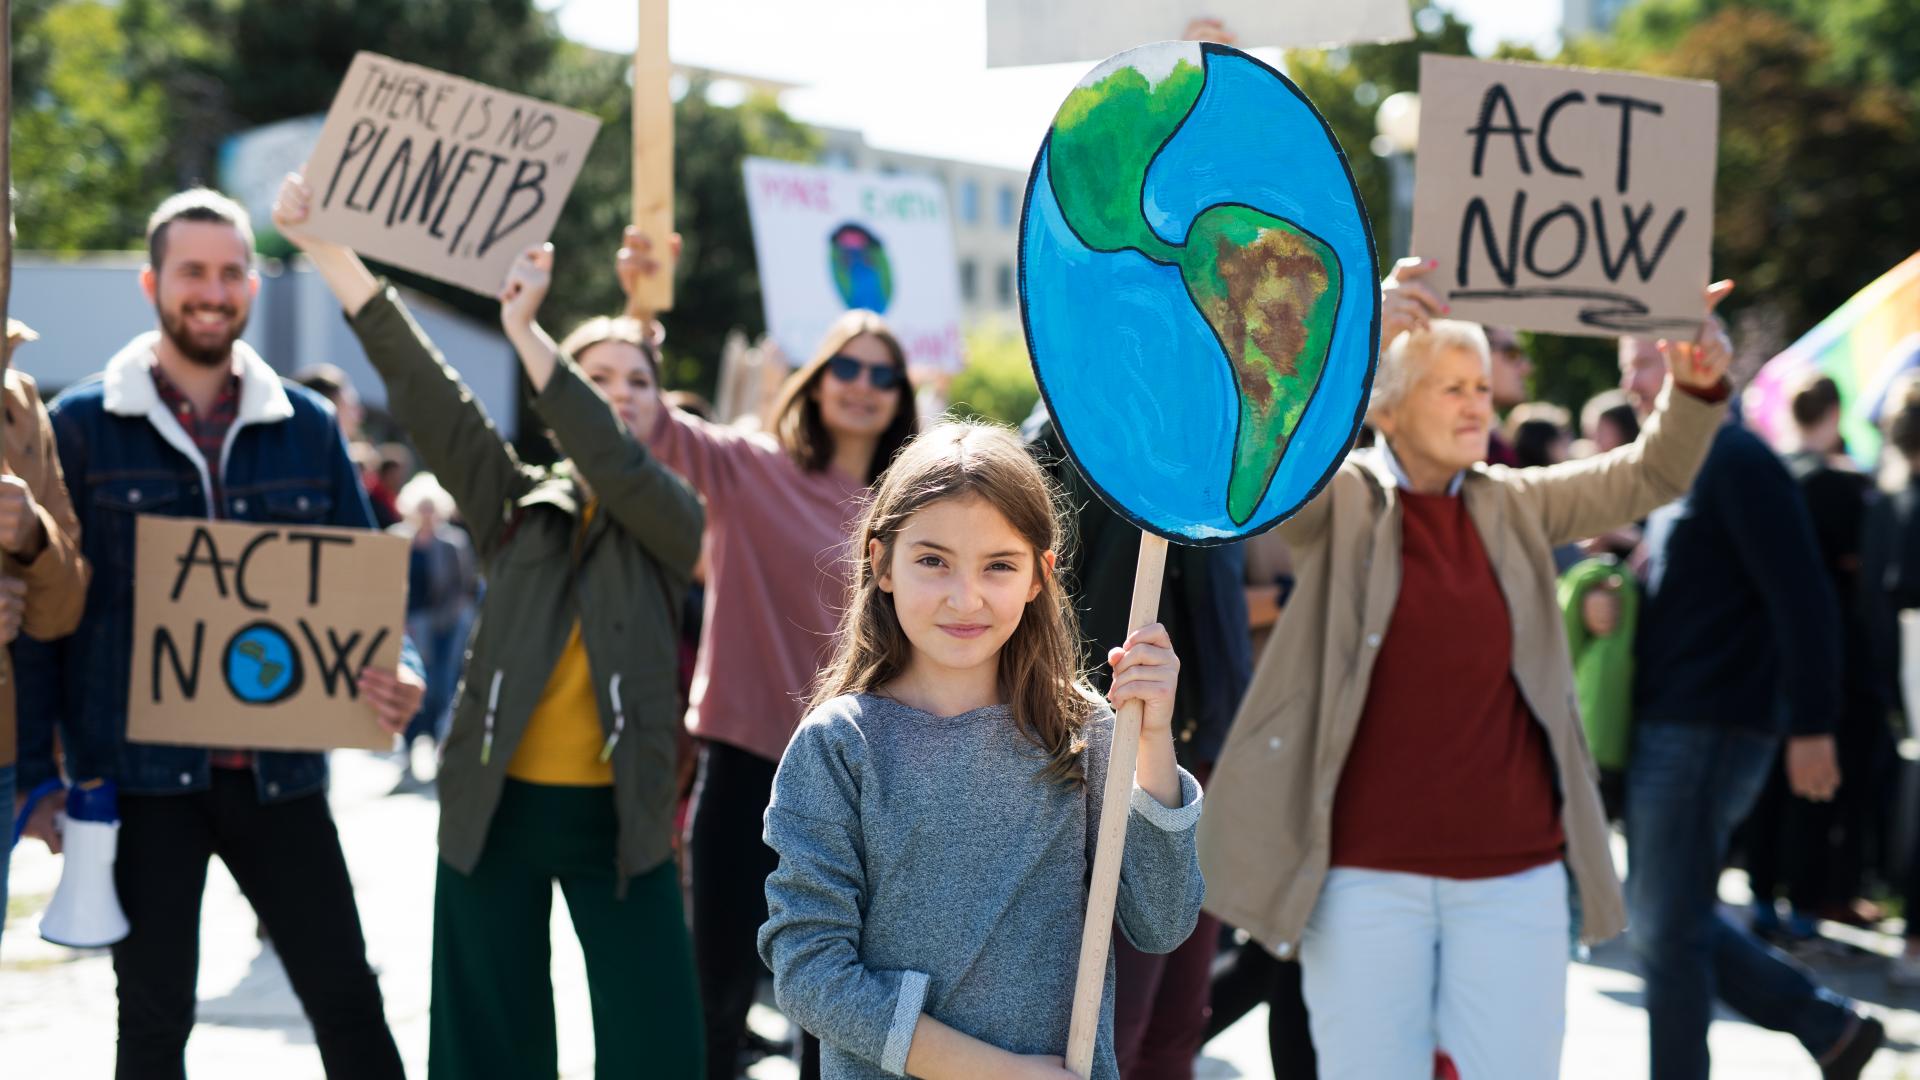 Een meisje met een bord van de aarde bij een groep mensen die actievoeren voor het klimaat